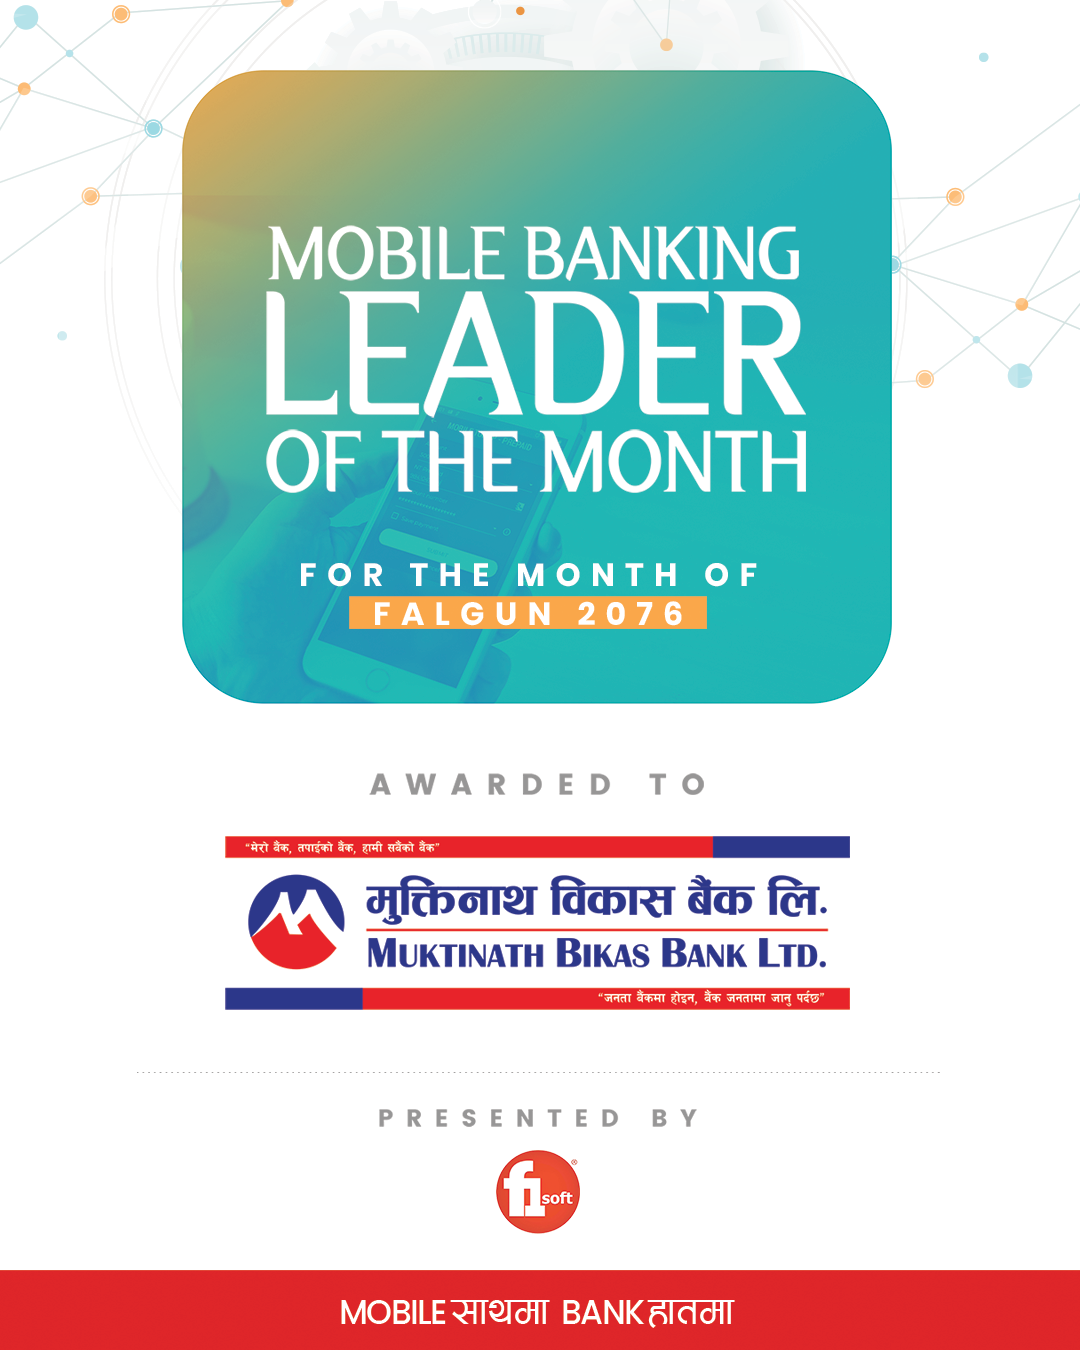 फागुन महिनाको मोबाईल बैंकिङ्ग लिडर बन्यो मुक्तिनाथ विकास बैंक